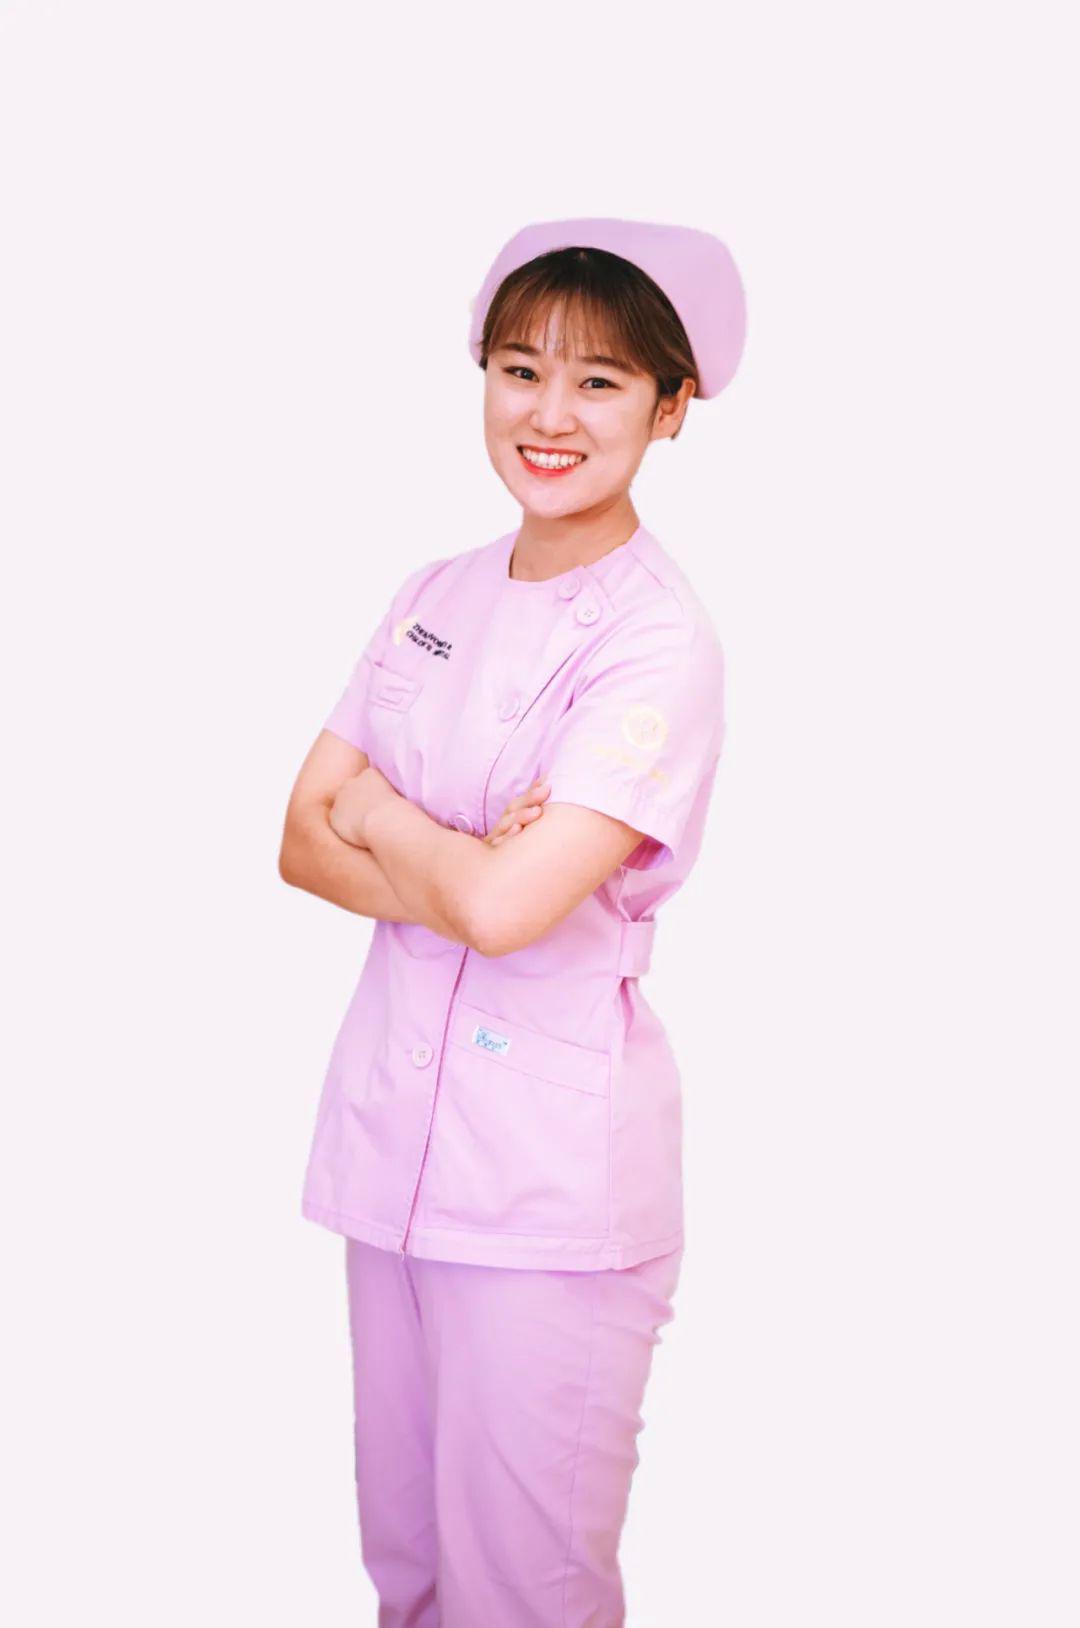 护士微笑礼仪图片